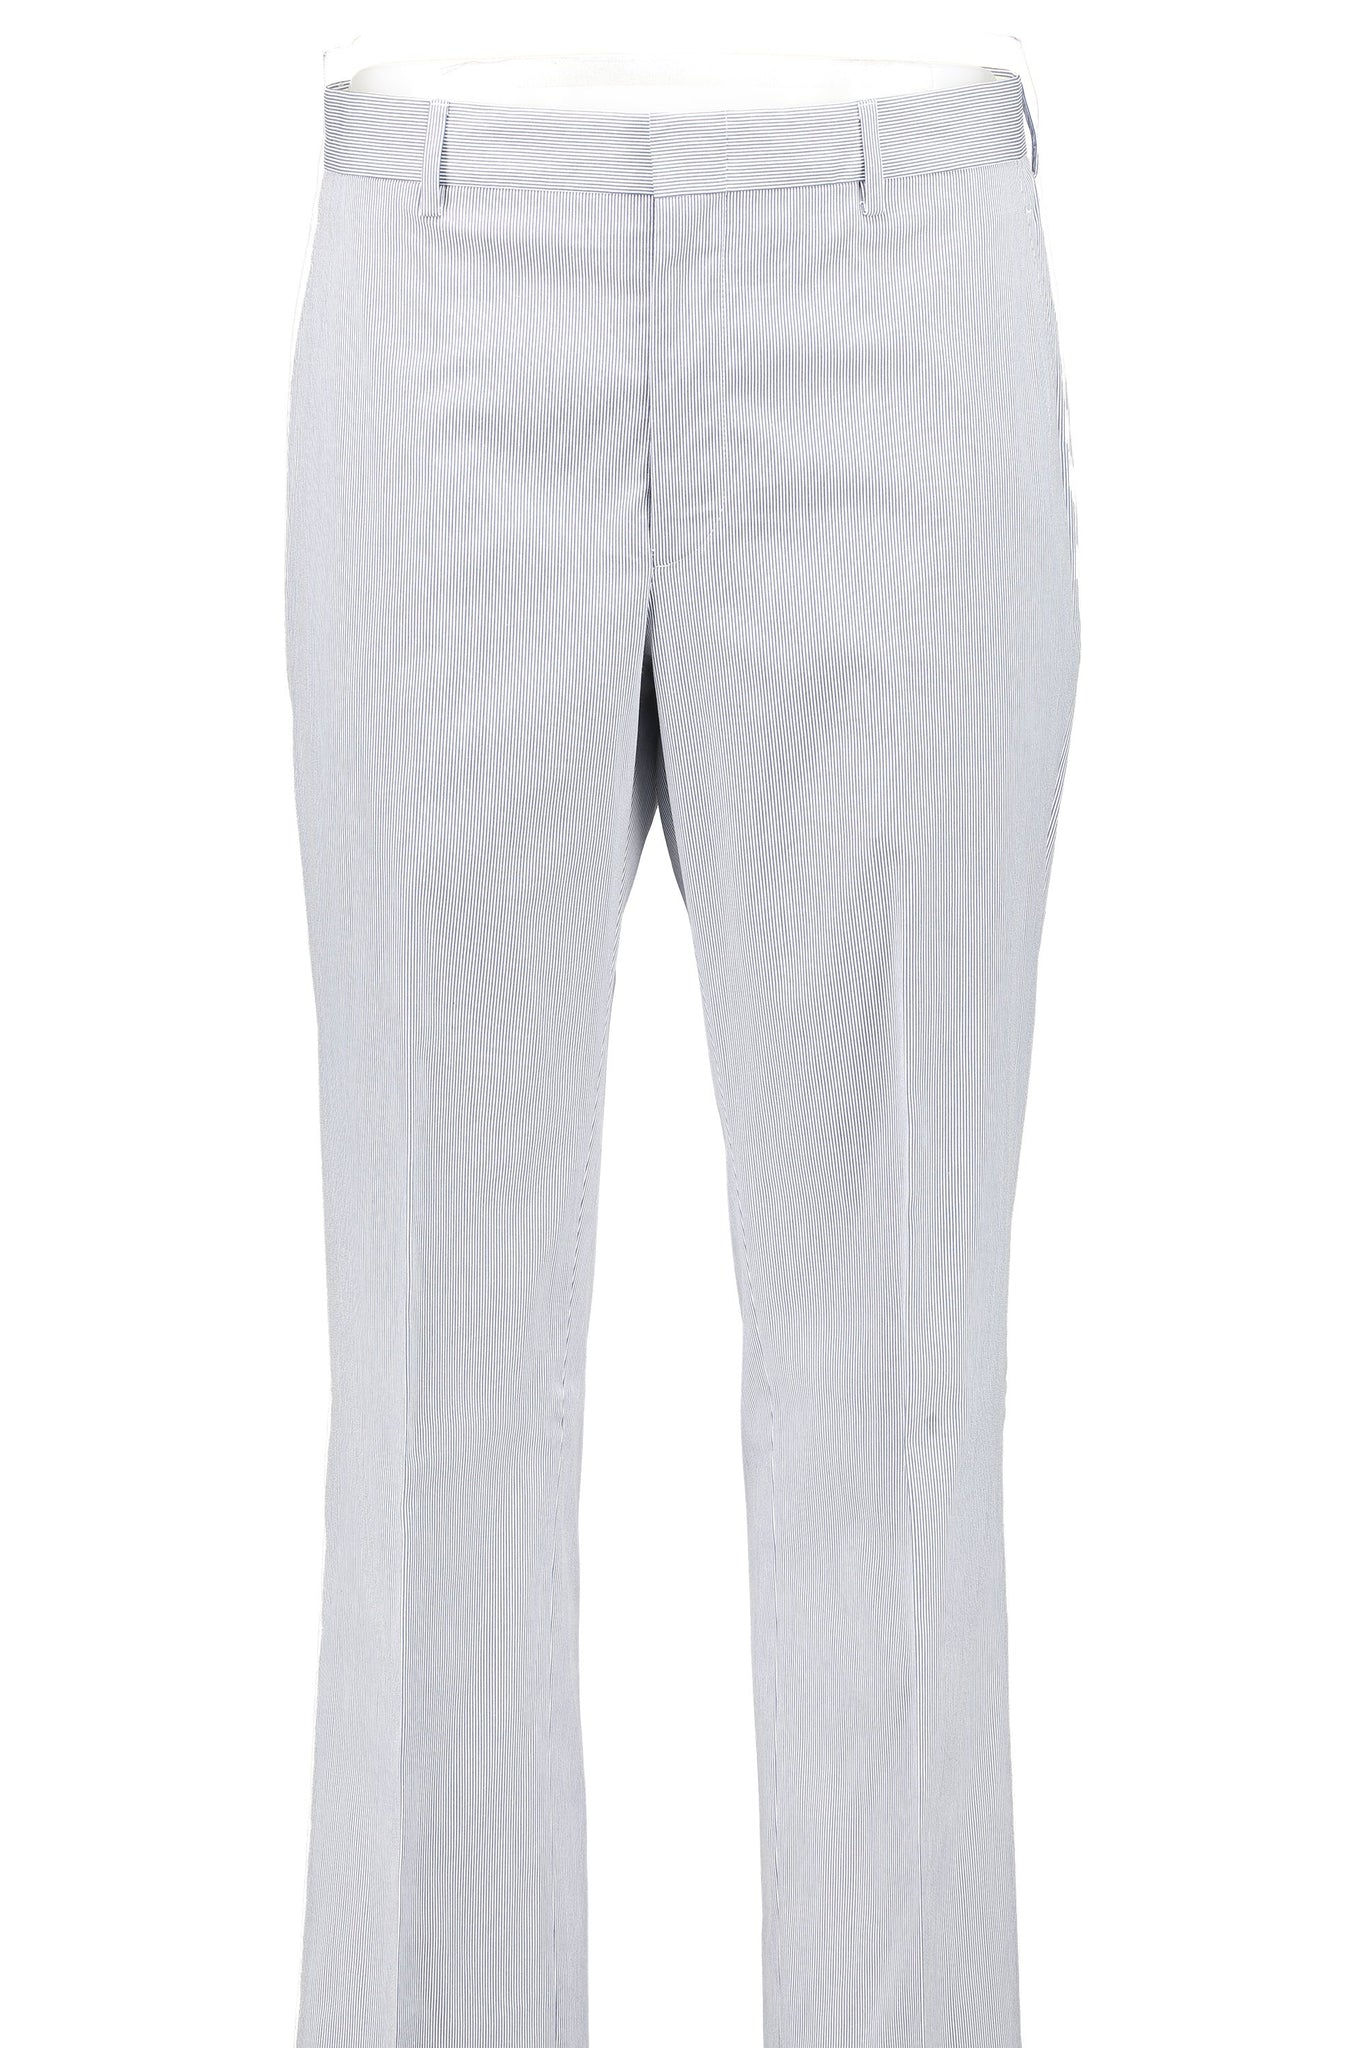 Men's Flat Front Pant - Suit Separate - Classic Cut - Blue/White Pincord -  100% COTTON